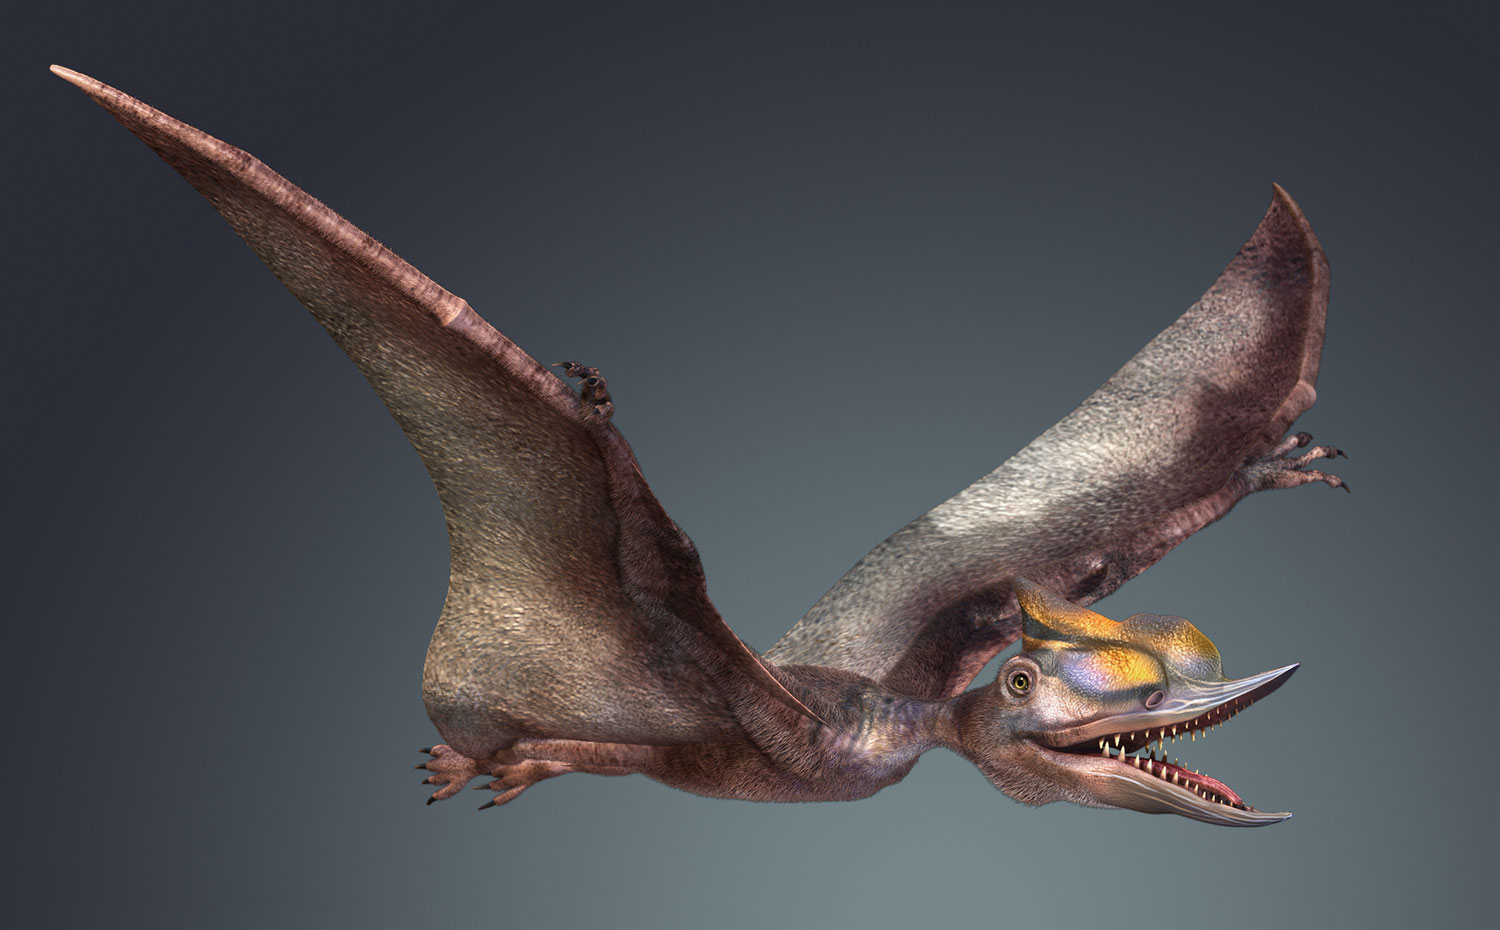 超全动作恐龙模型之1—无齿翼龙 带材质贴图模型-恐龙模型库-Maya(.ma/.mb)模型下载-cg模型网